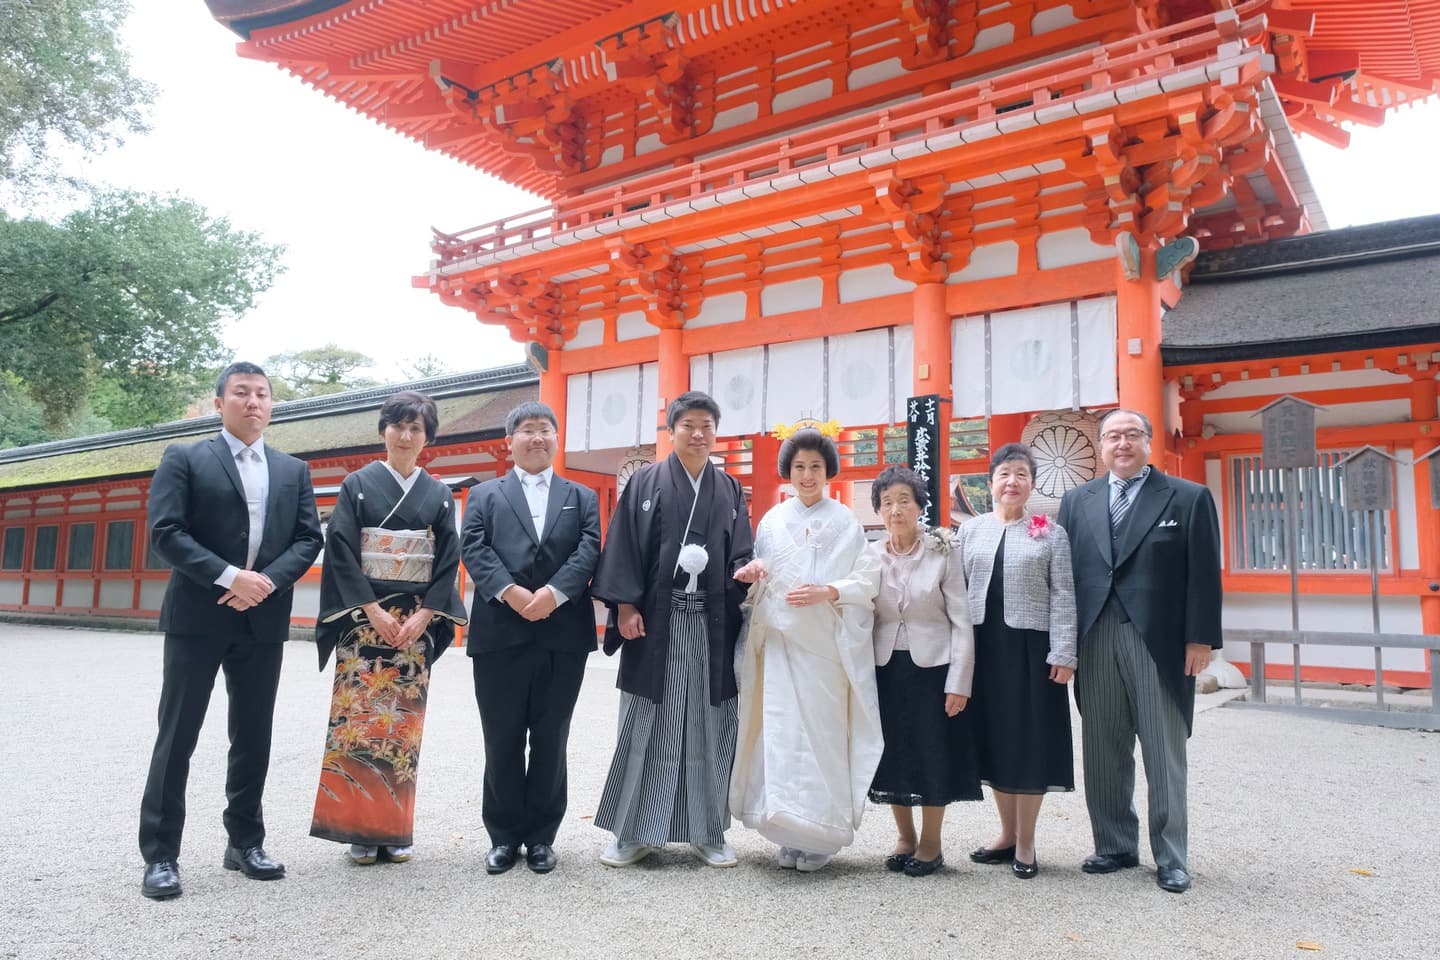 京都下鴨神社での結婚式写真